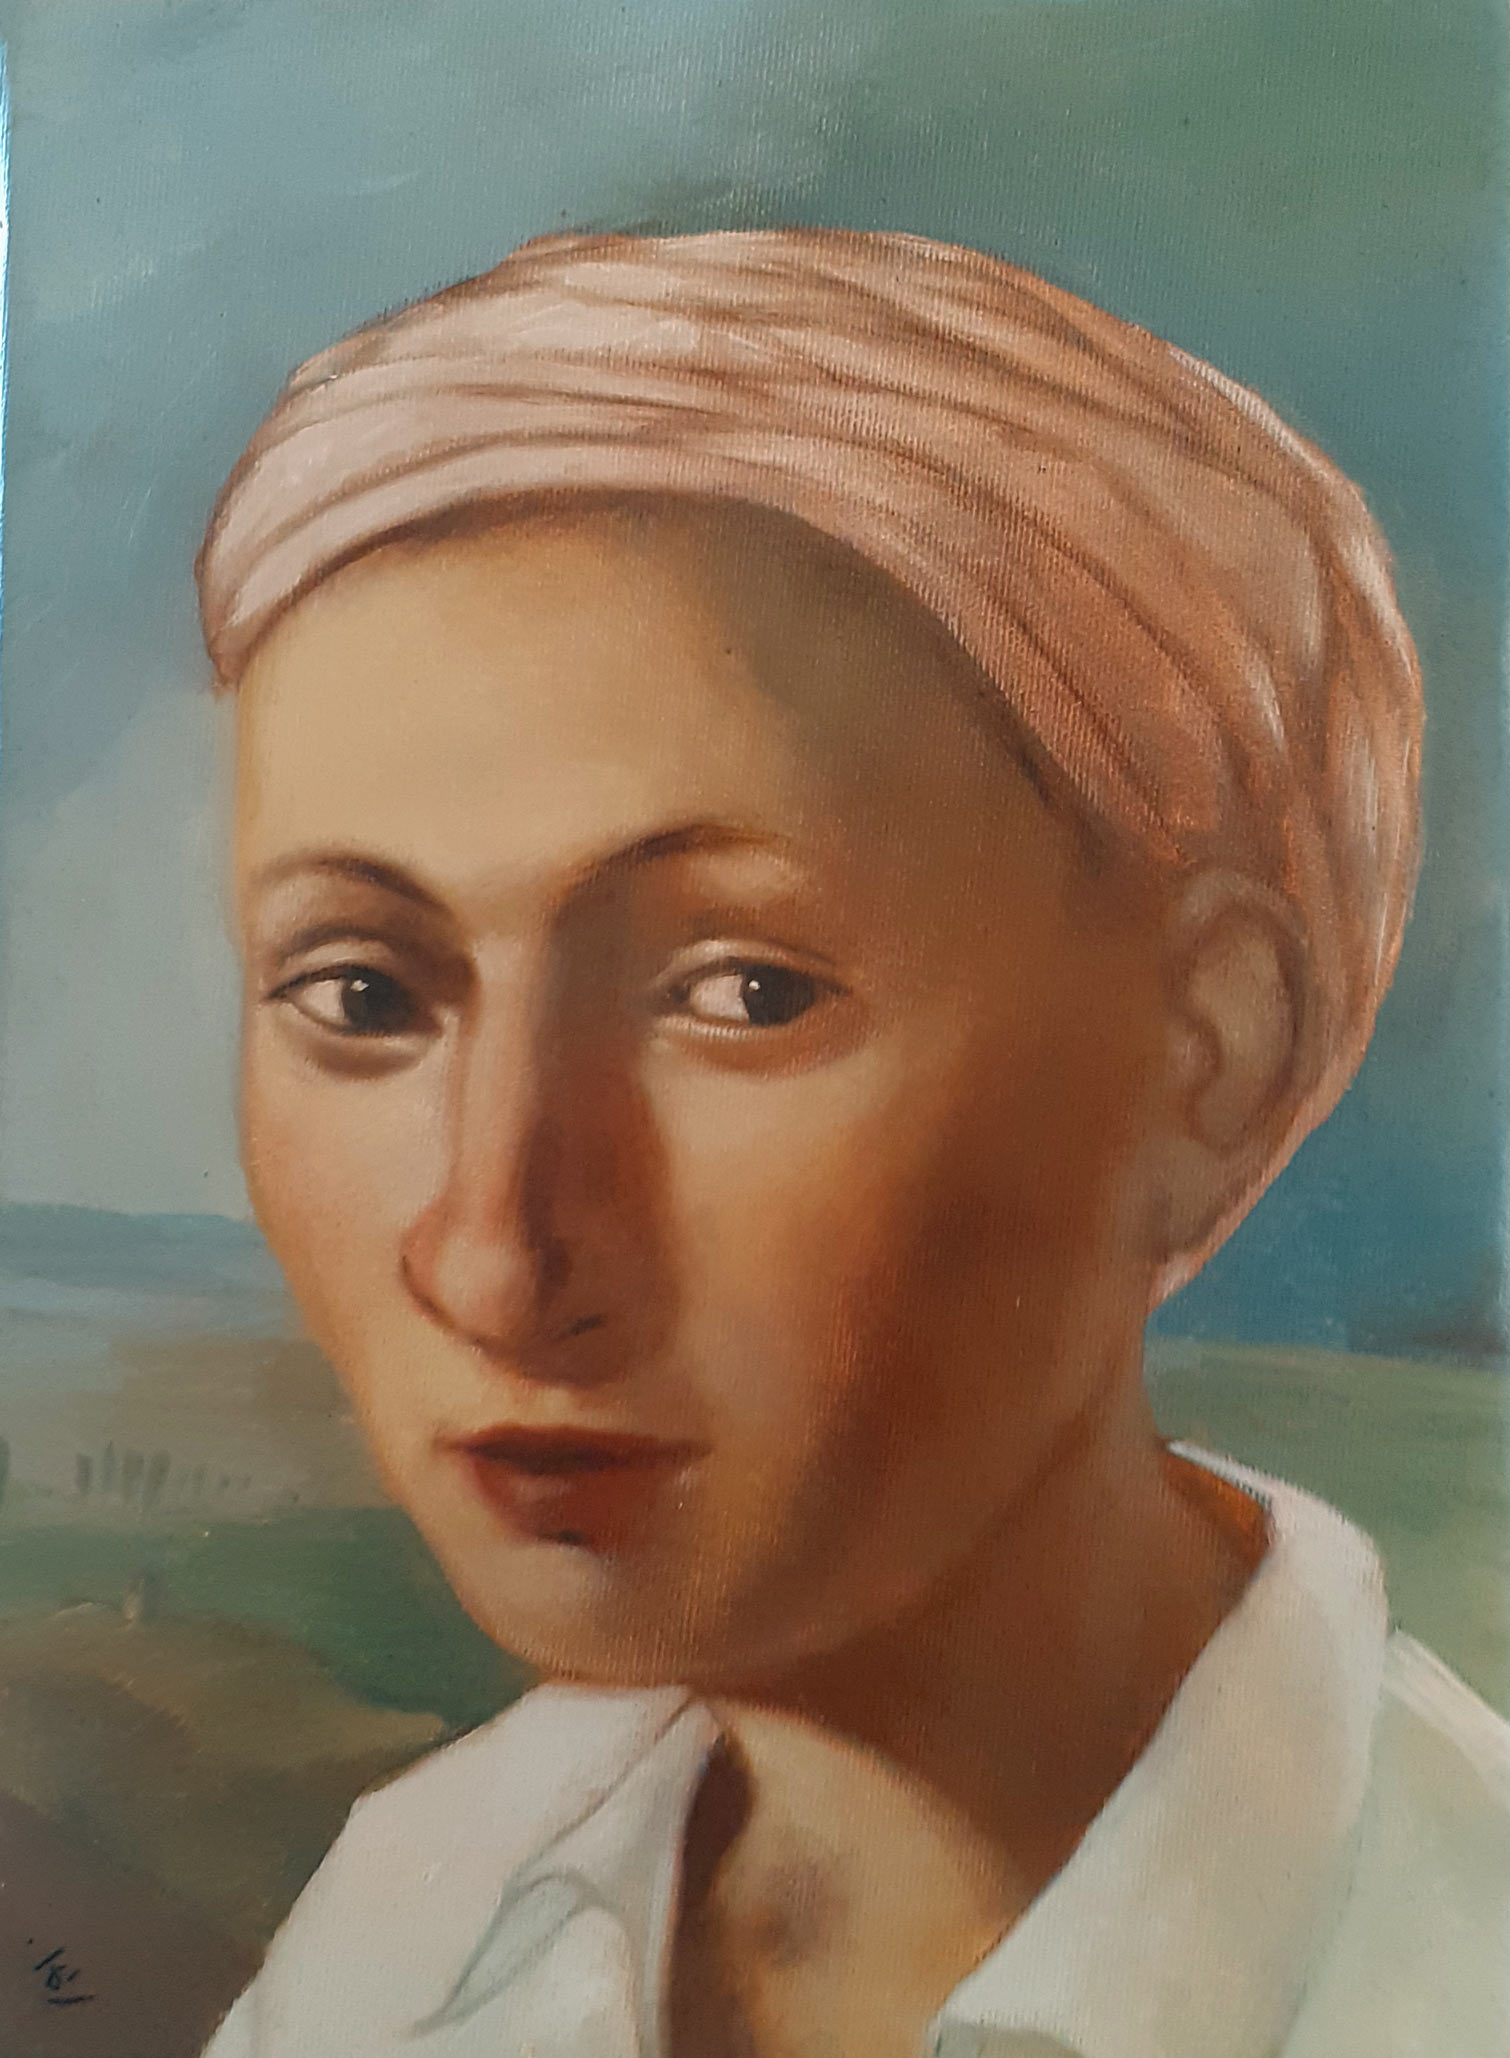 visage de femme coiffée d'un turban.